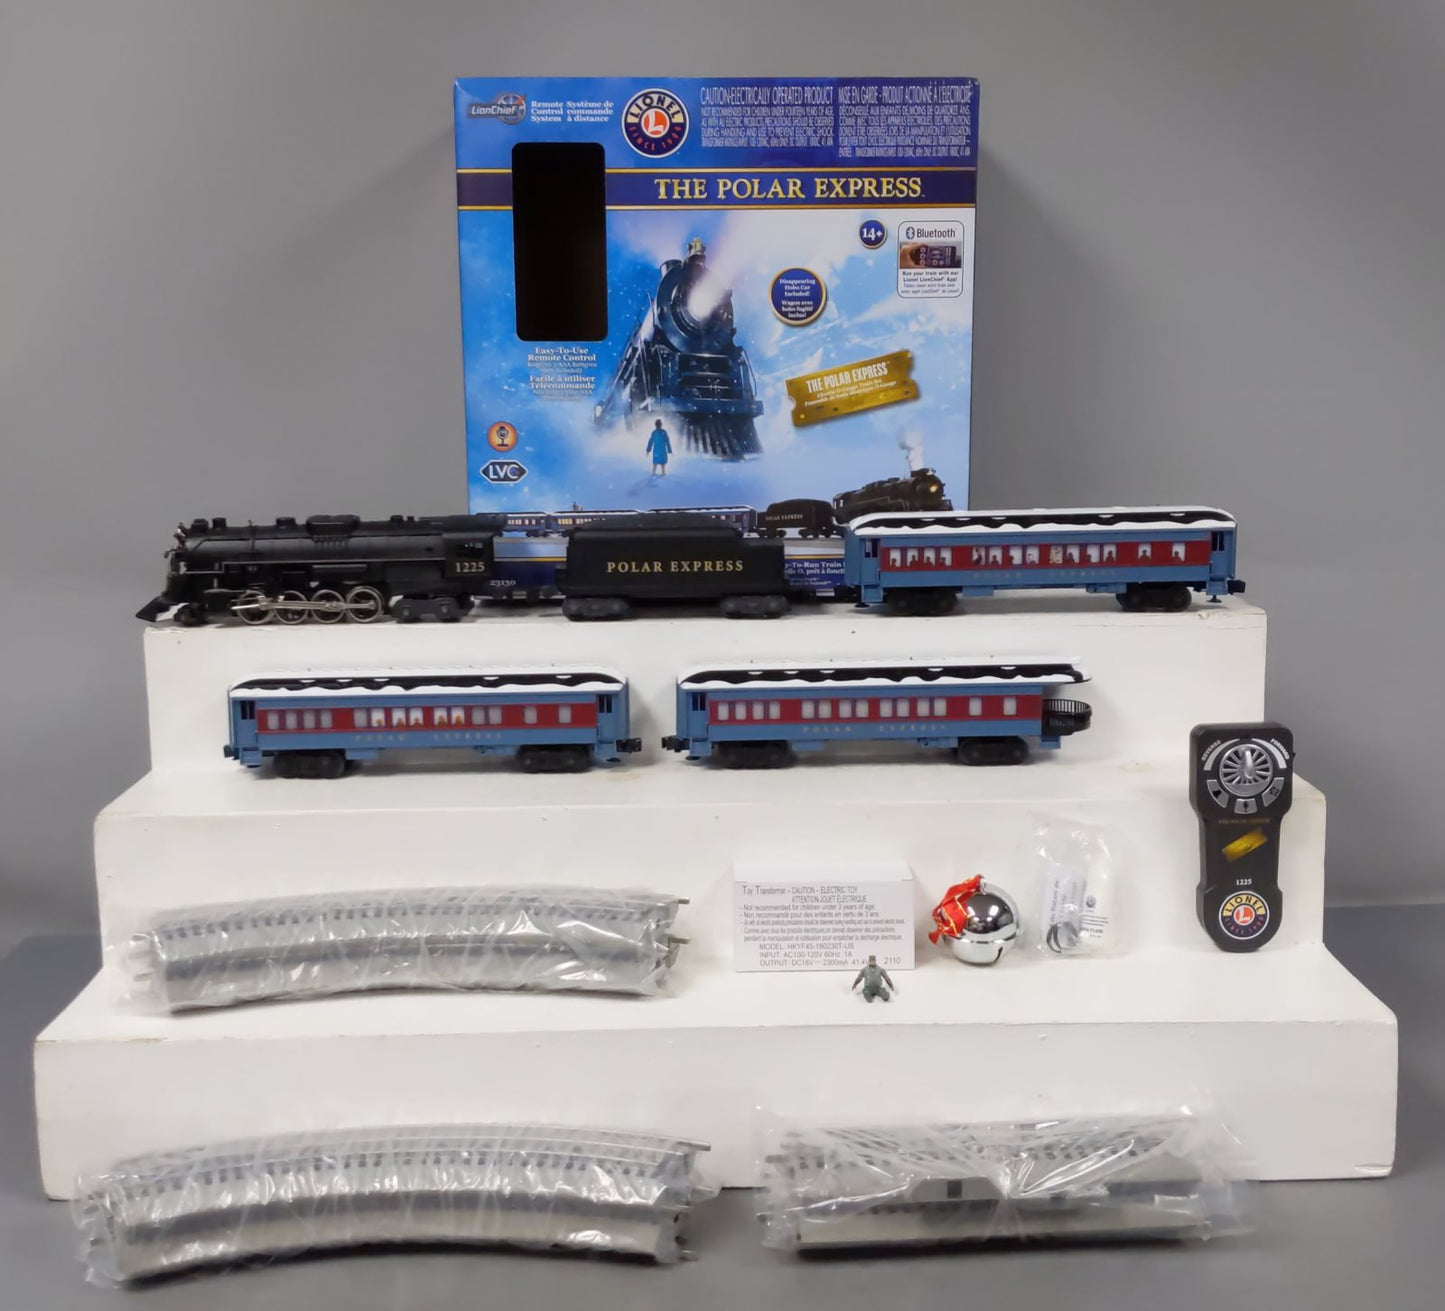 Lionel 2123130 O The Polar Express Lion Chief O Gauge Train Set w/Bluetooth 5.0 EX/Box